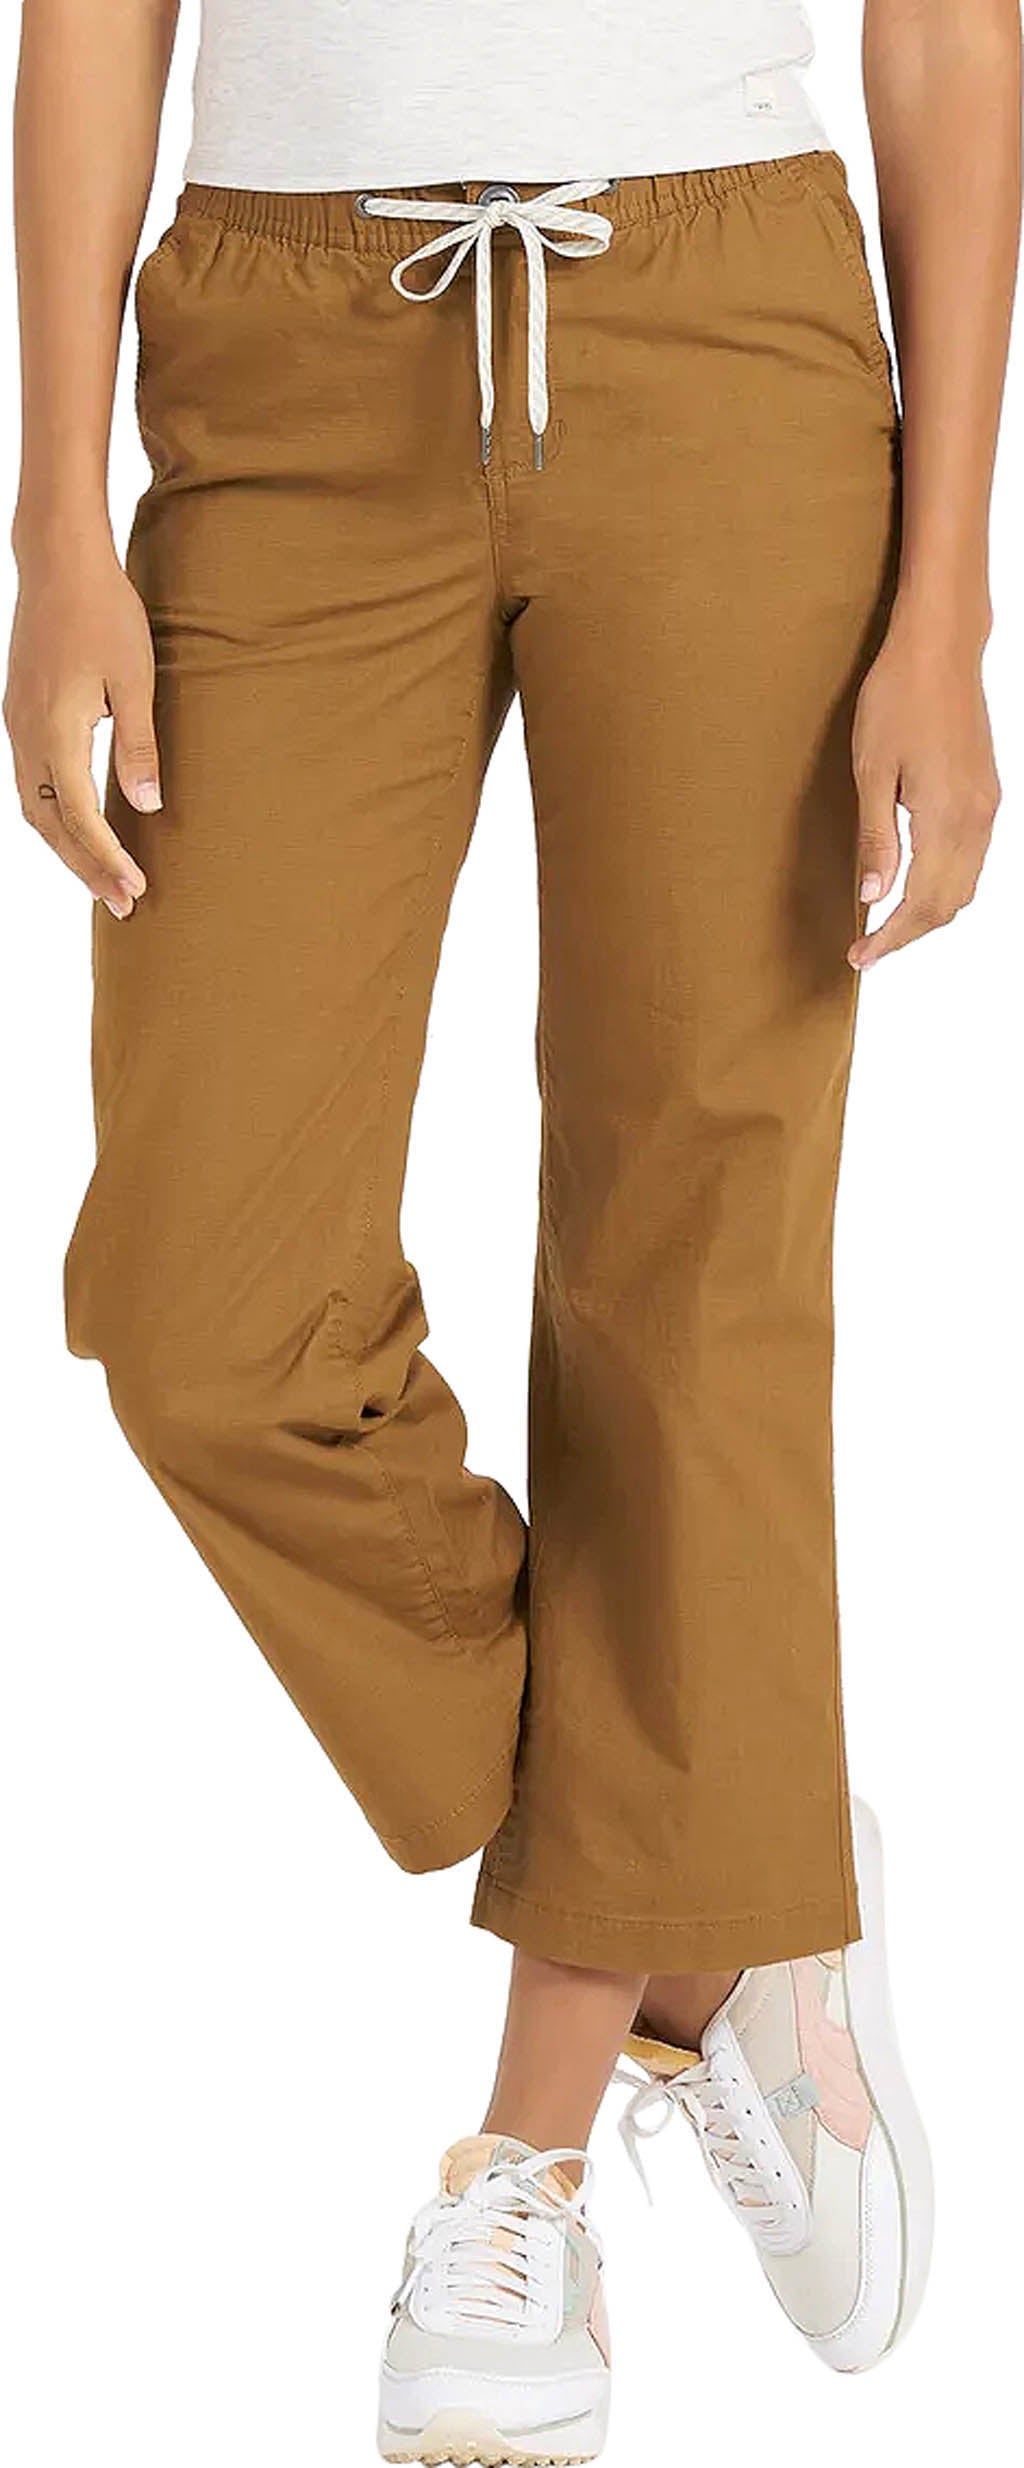 Vuori Ripstop Pants - Women's